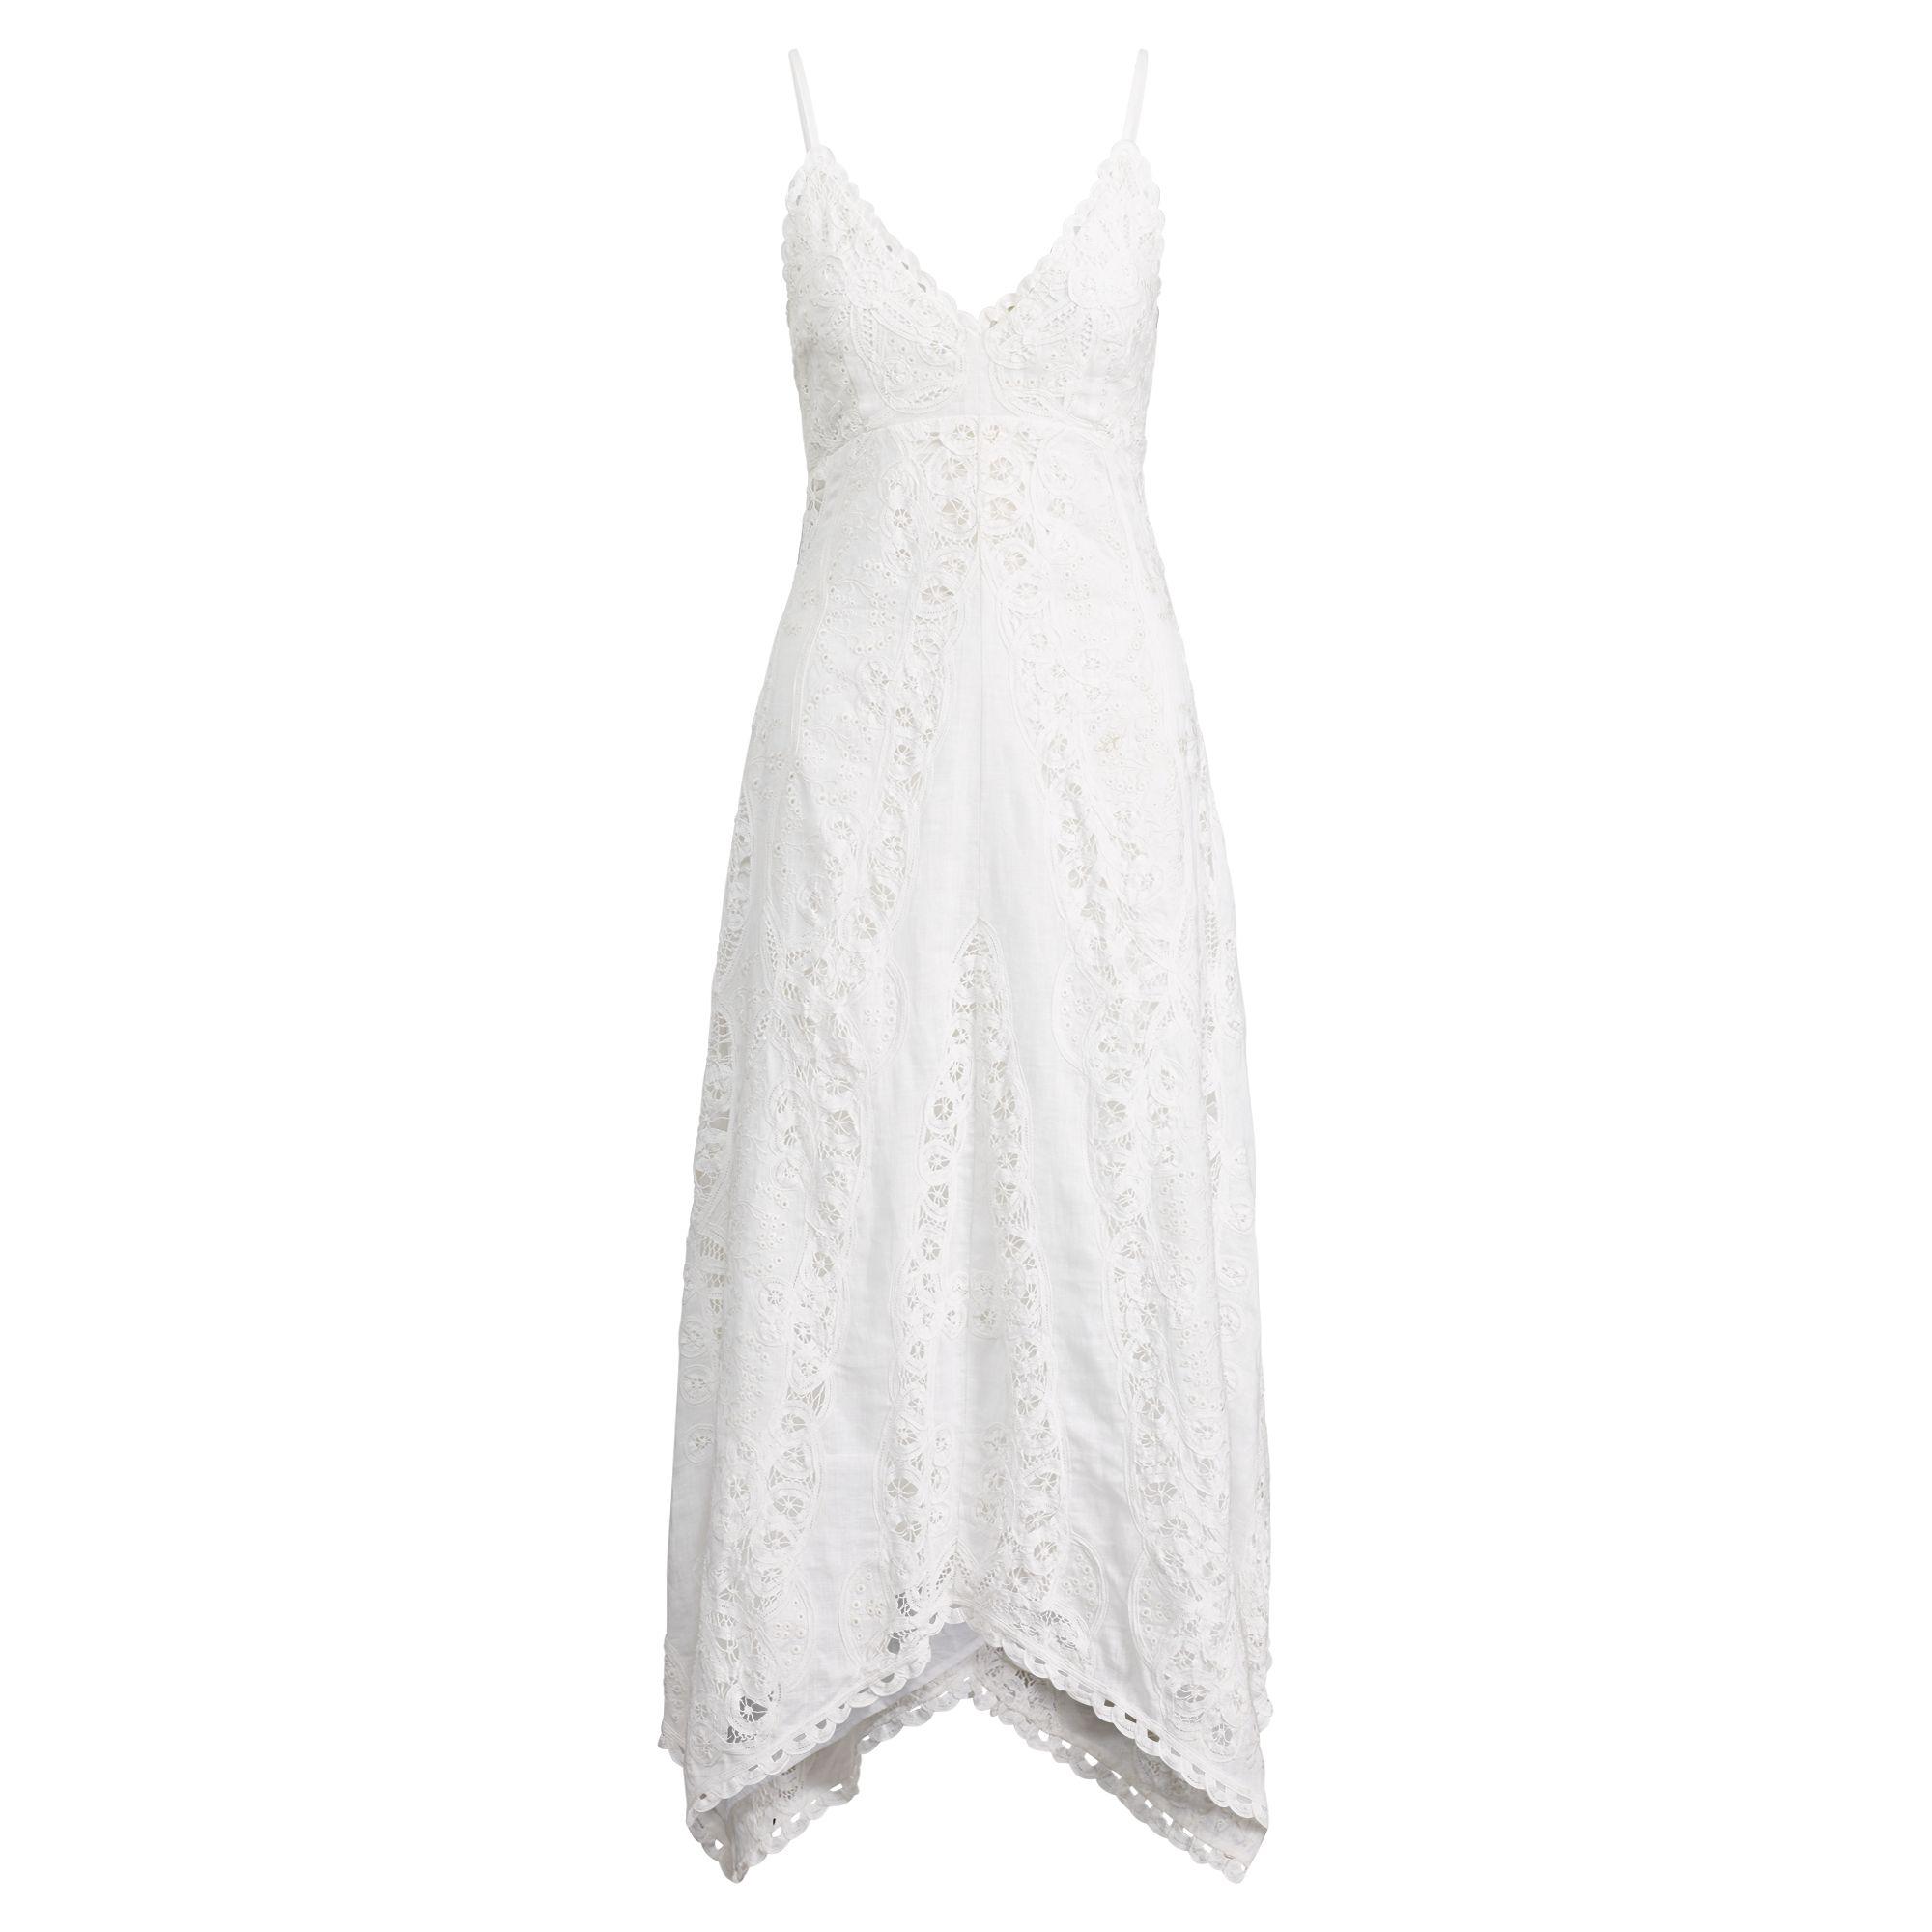 ralph lauren white maxi dress